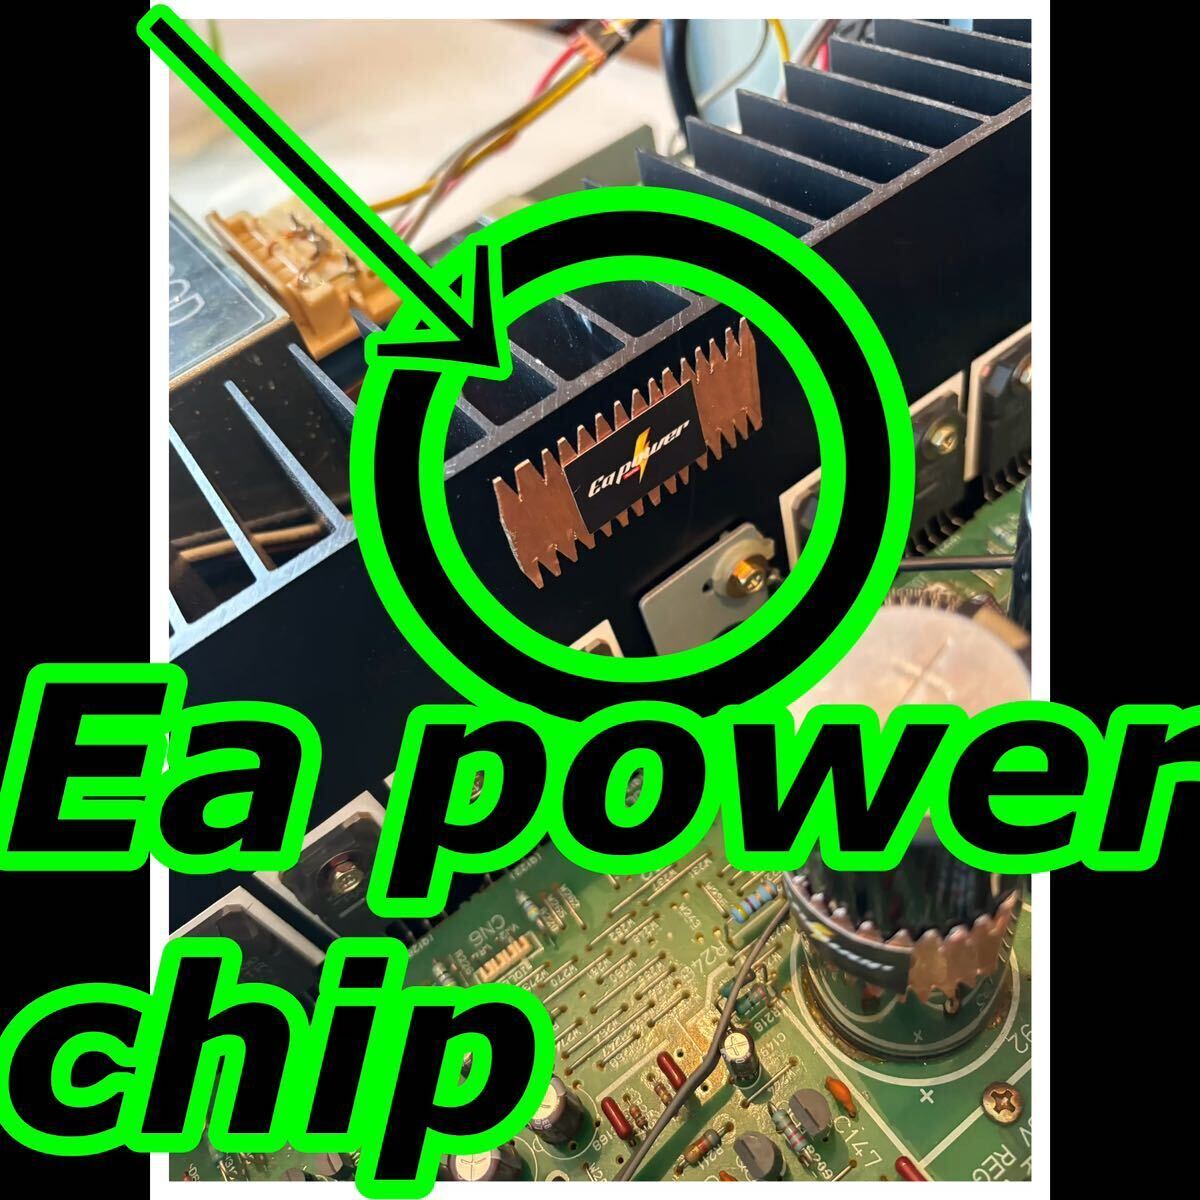 特許庁登録アーシング！新しい発想！オーディオアンプ！電源コード！『Ea power chip』静電気放電により本来の性能を引き出す!2枚セット！_画像5